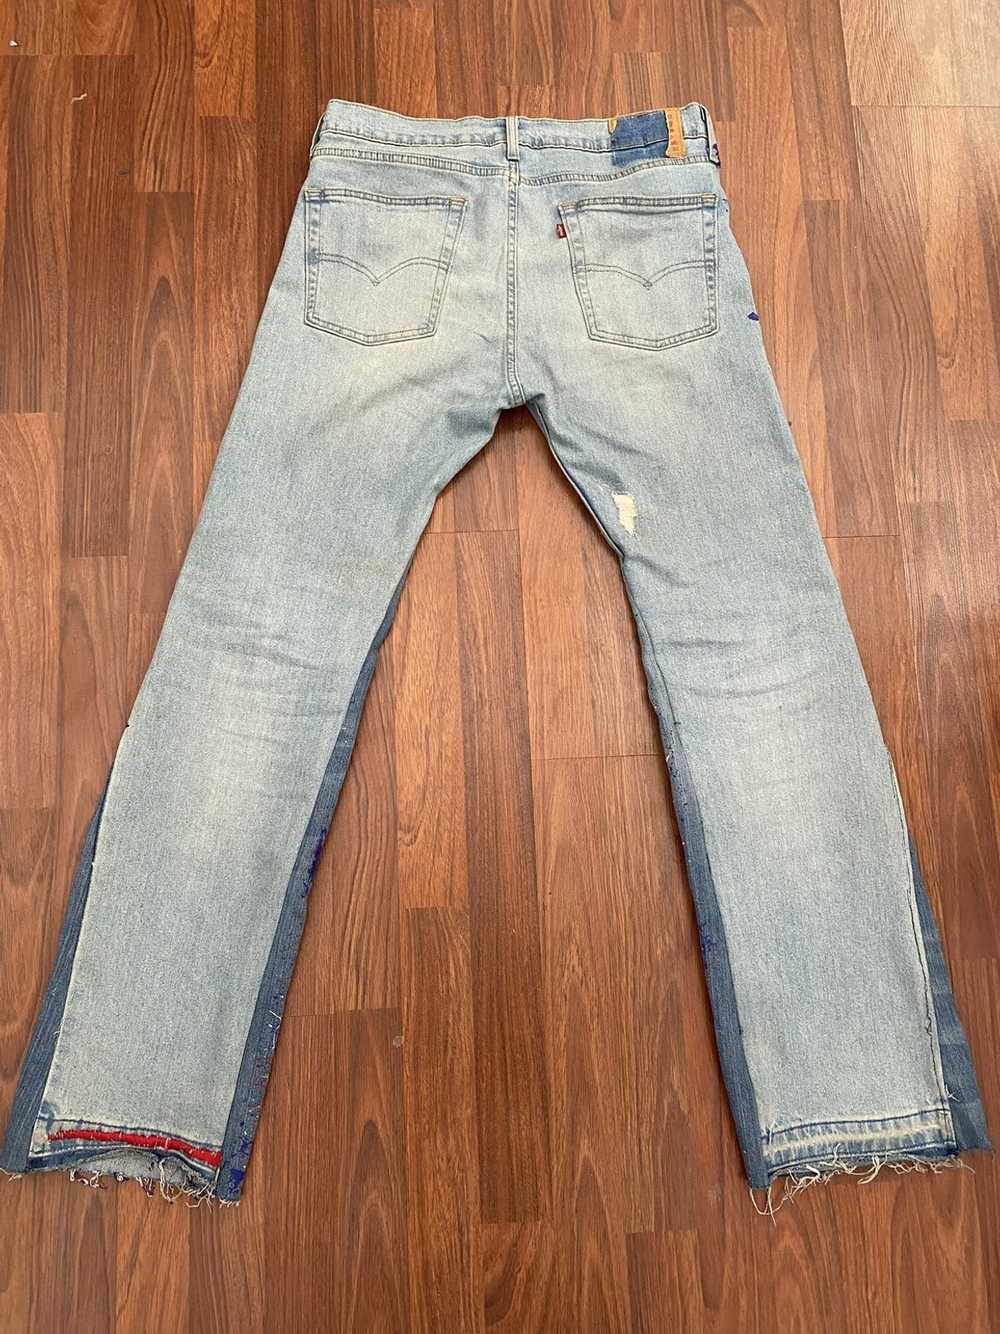 Vintage Flared 513 denim jeans - image 10